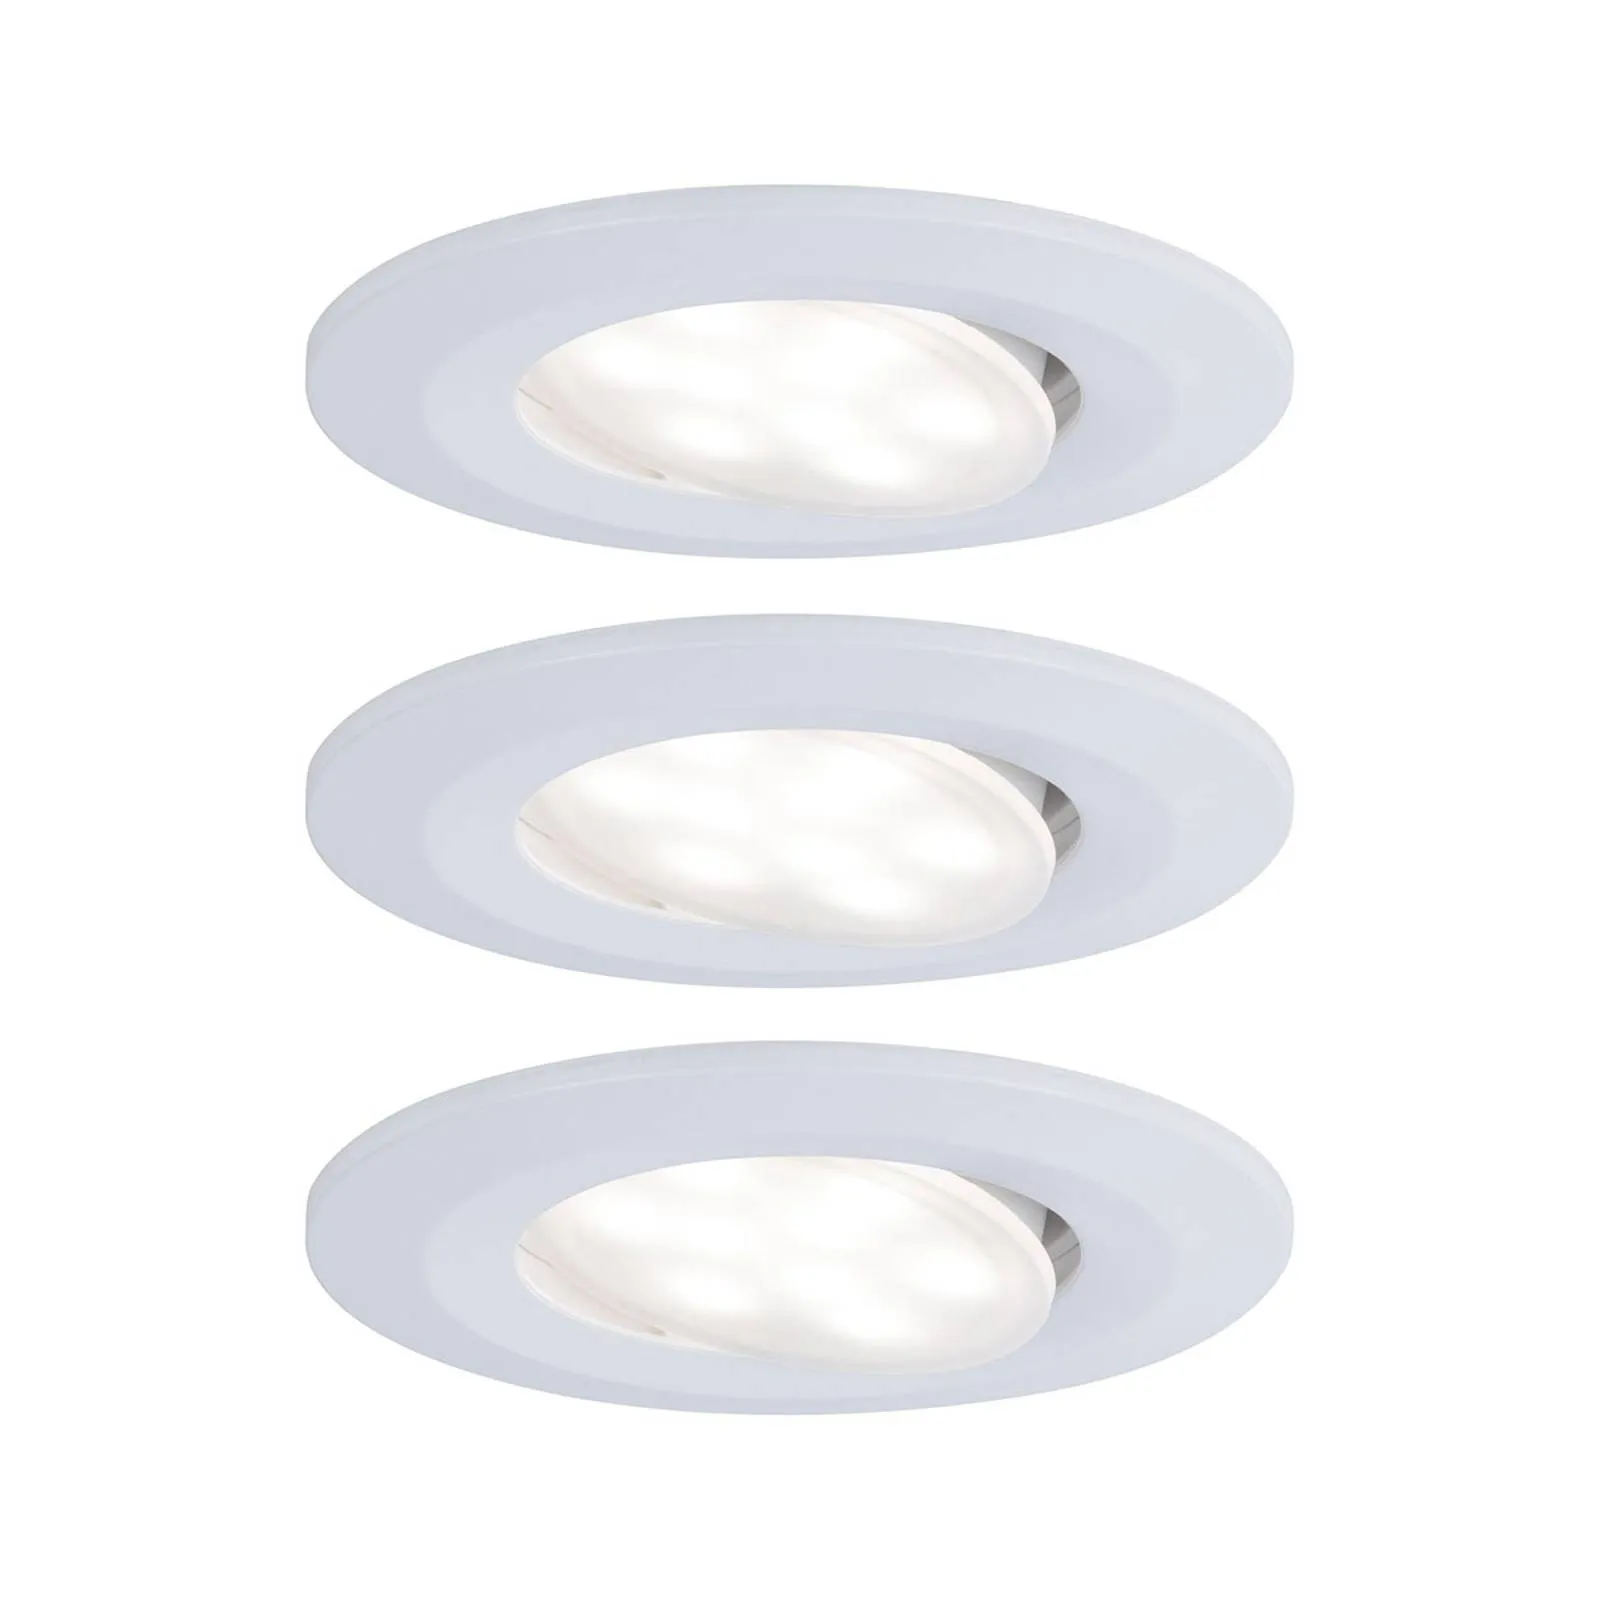 Paulmann LED outdoor spot Calla set of 3 white